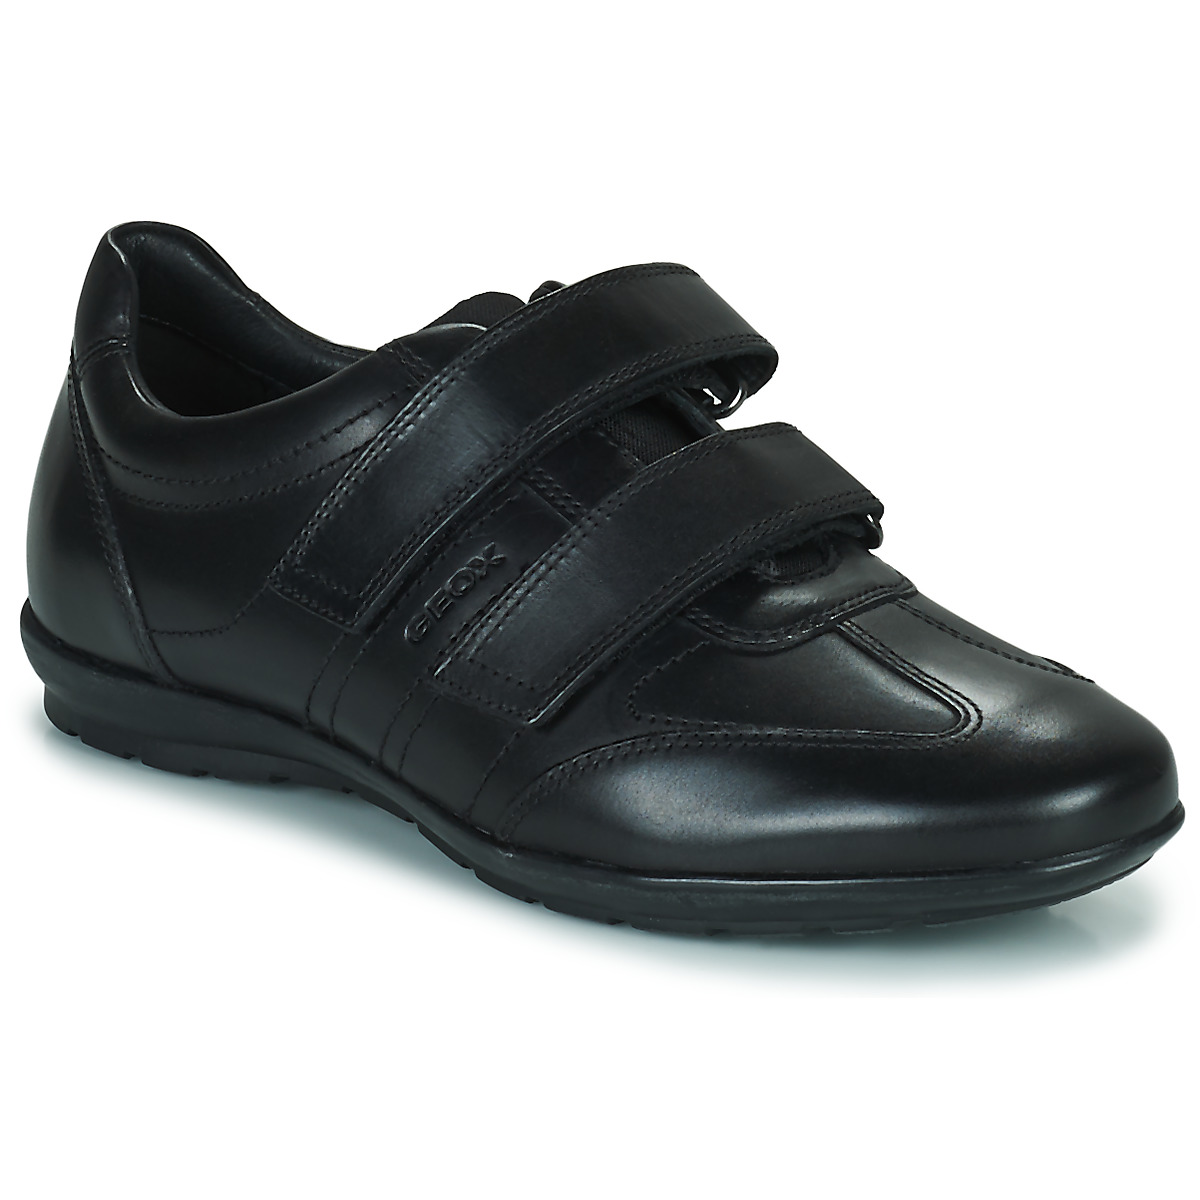 Παπούτσια Άνδρας Χαμηλά Sneakers Geox UOMO SYMBOL Black